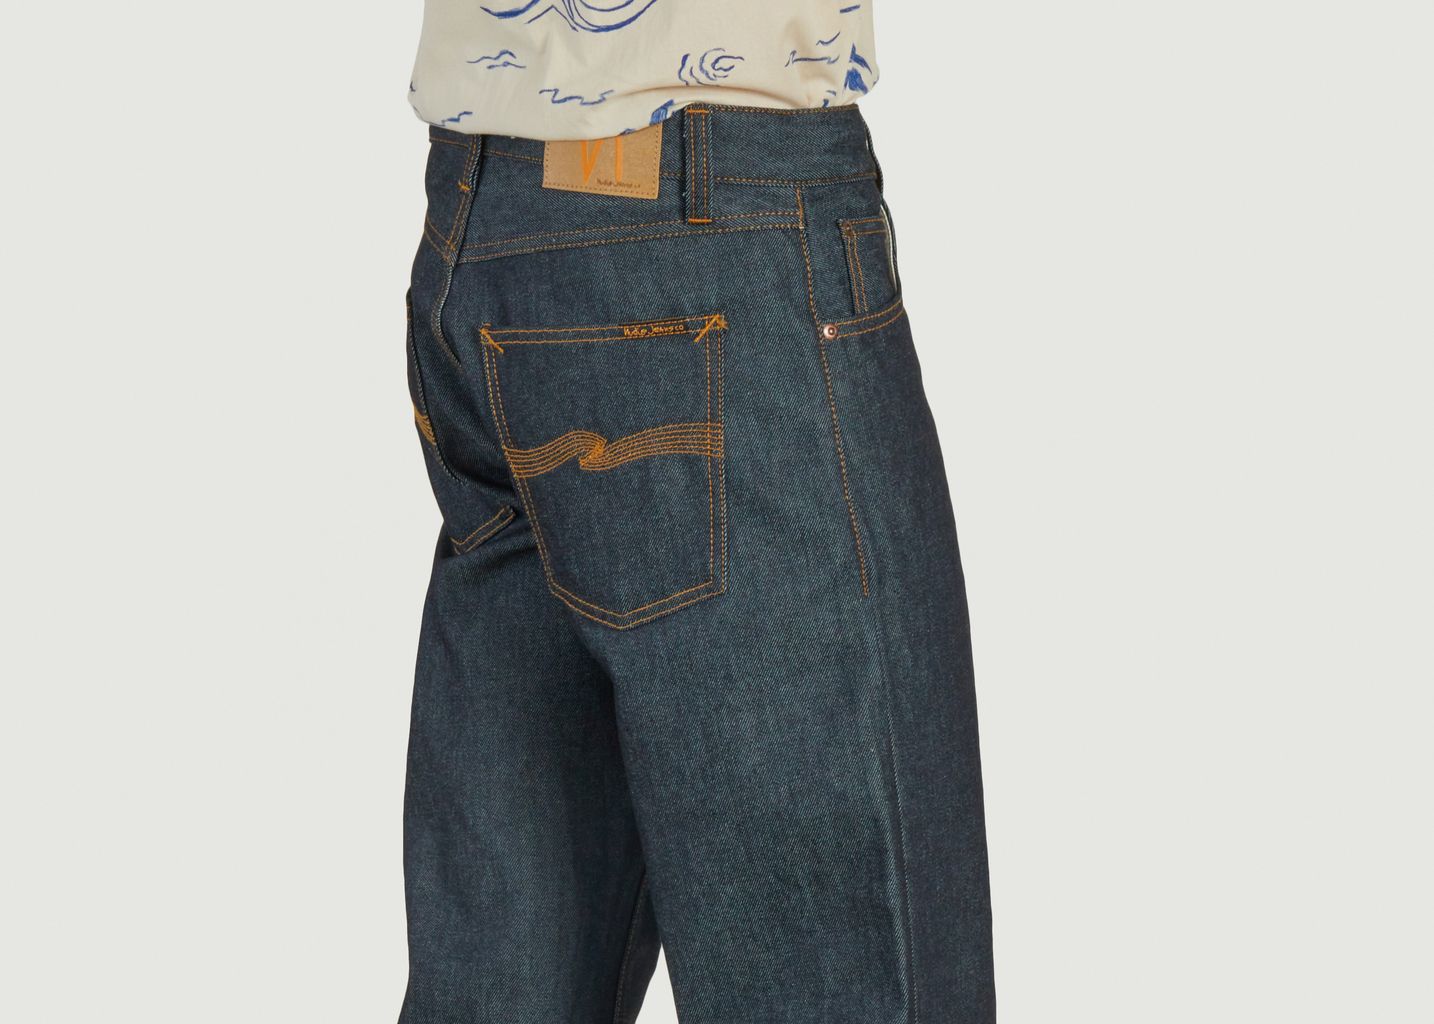 Rad Rufus jeans - Nudie Jeans